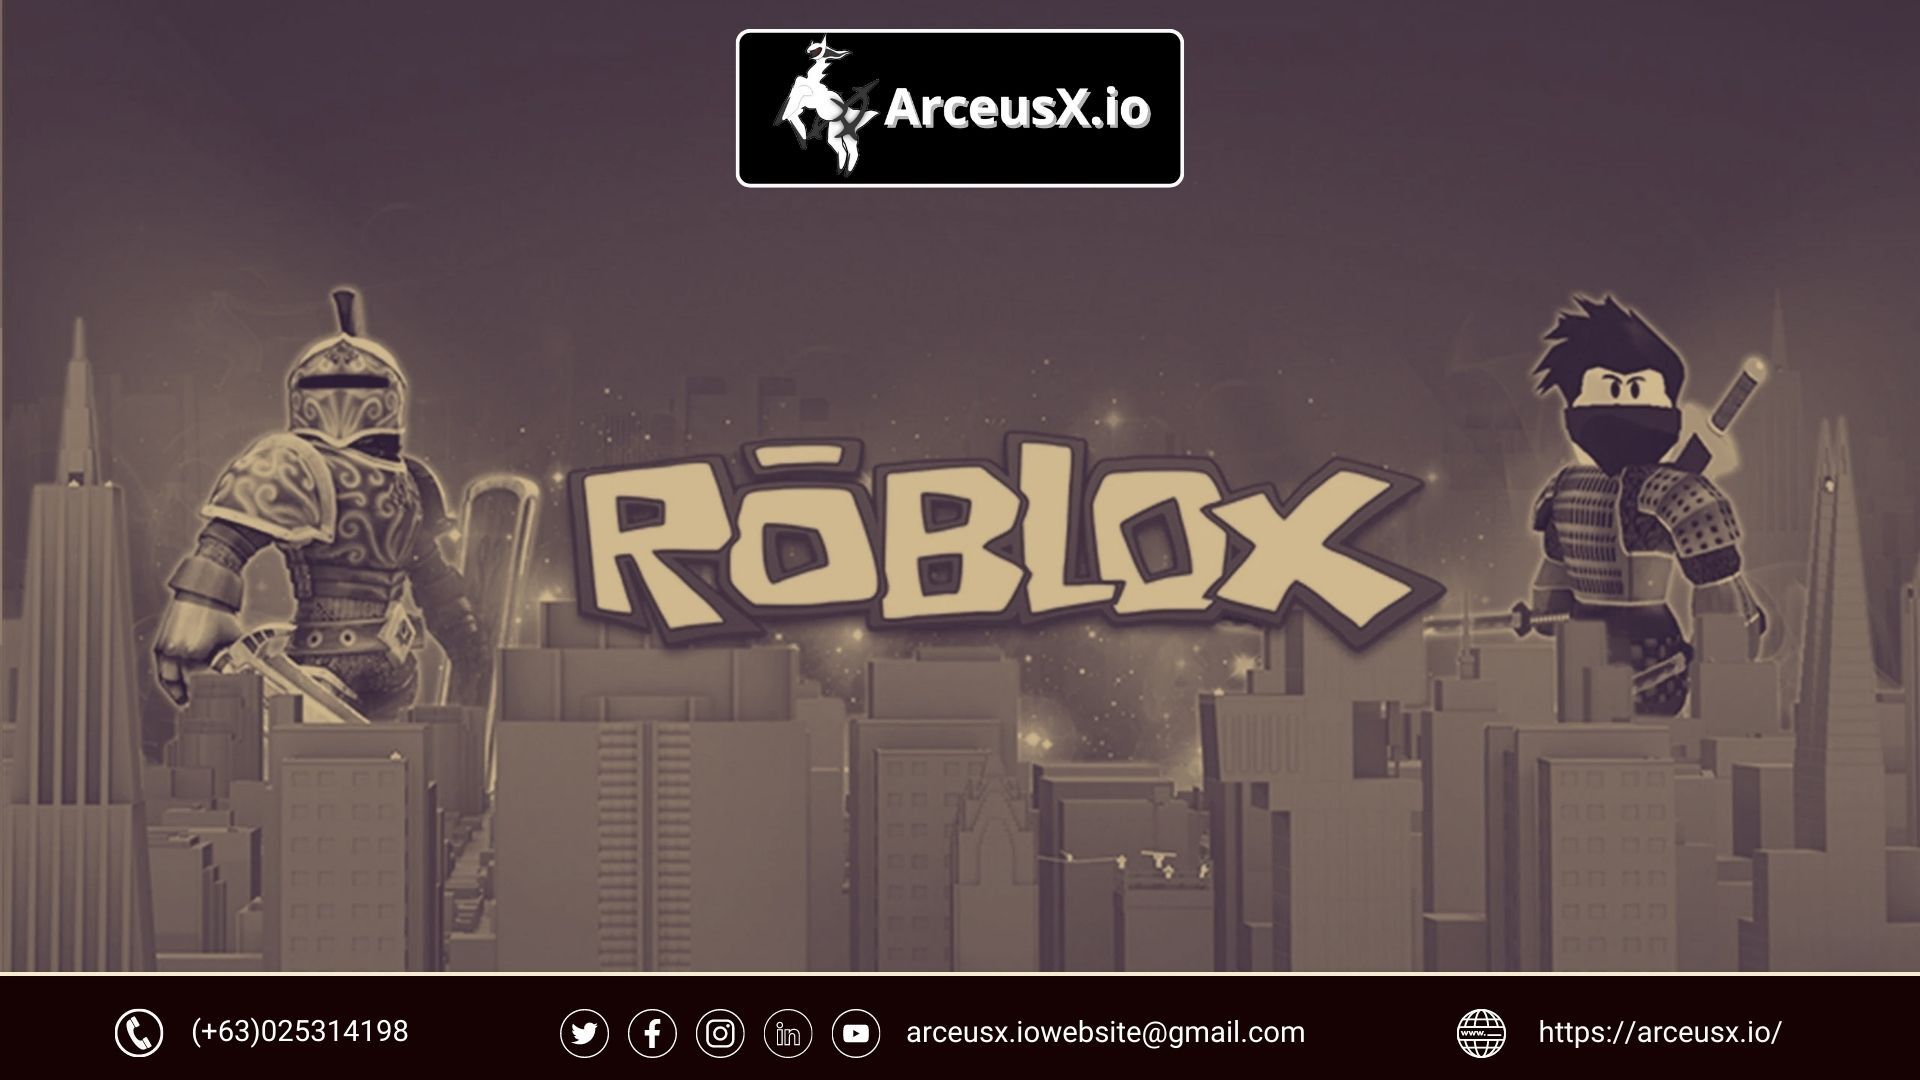 arceusx's Ko-fi profile. /arceusx - Ko-fi ❤️ Where